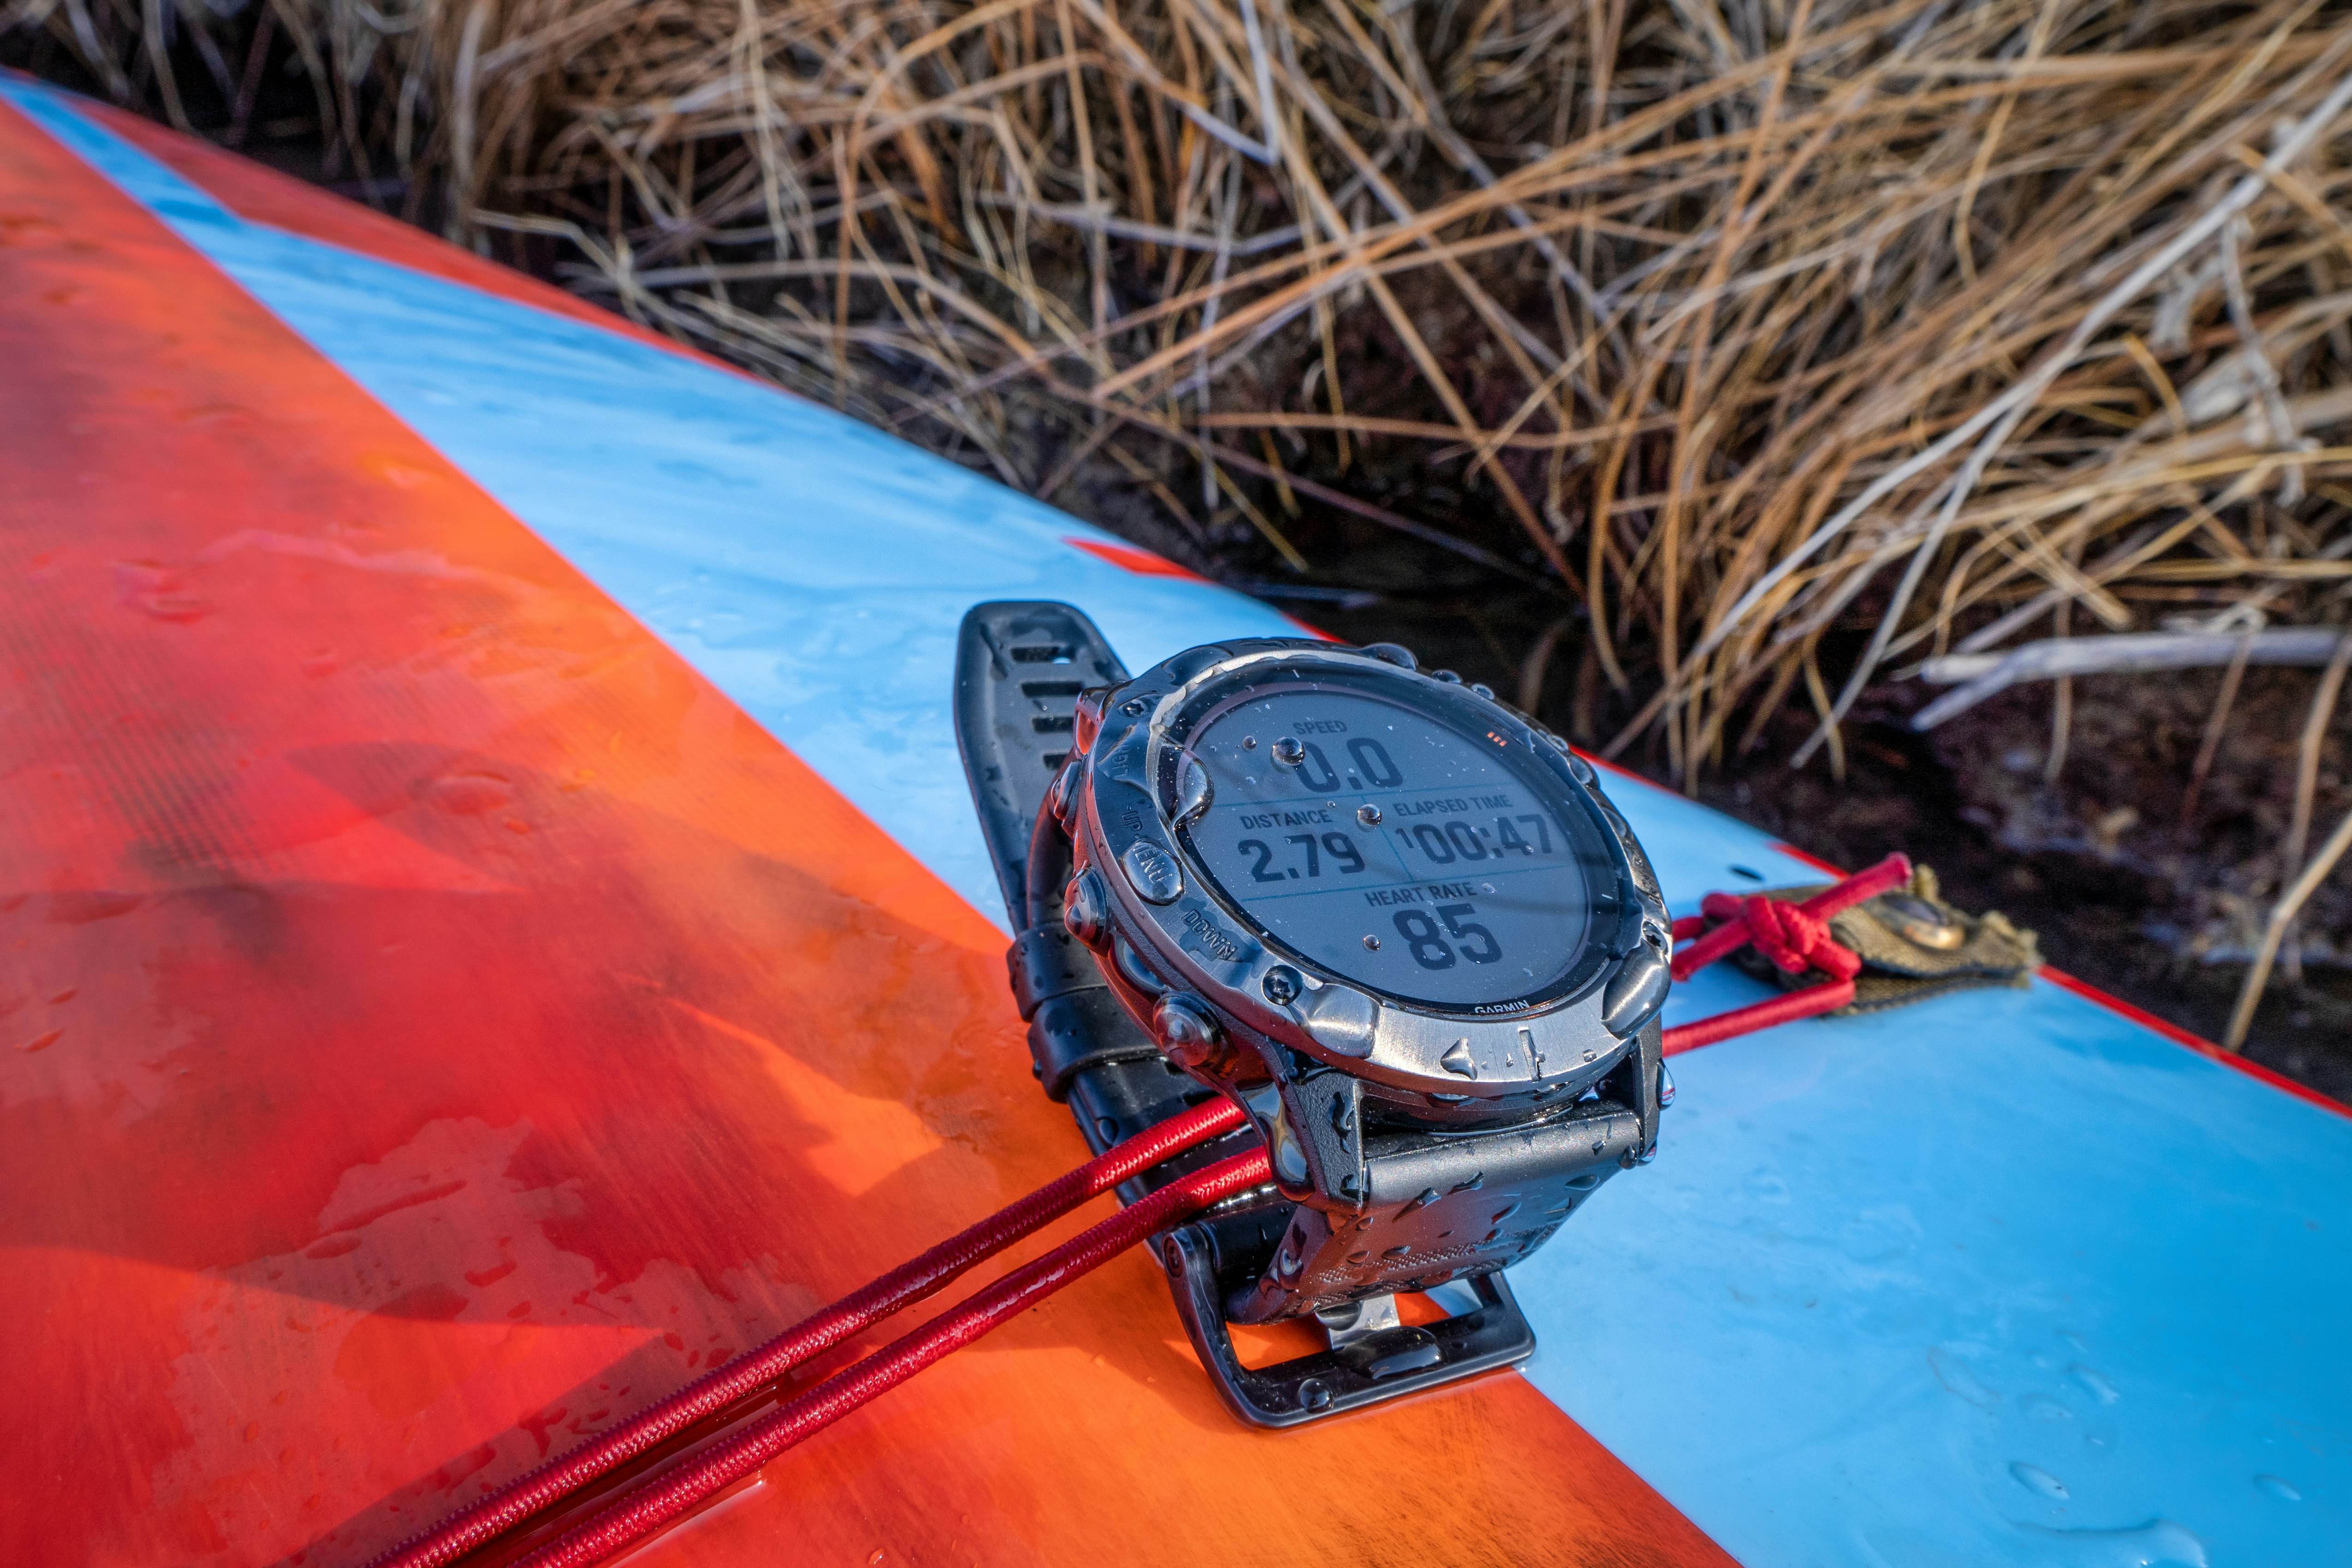 "Garmin fenix Pro 6X" saulės baterijos laikrodis ant stovinčios irklentės denio su treniruočių laikrodžio ciferblatu.